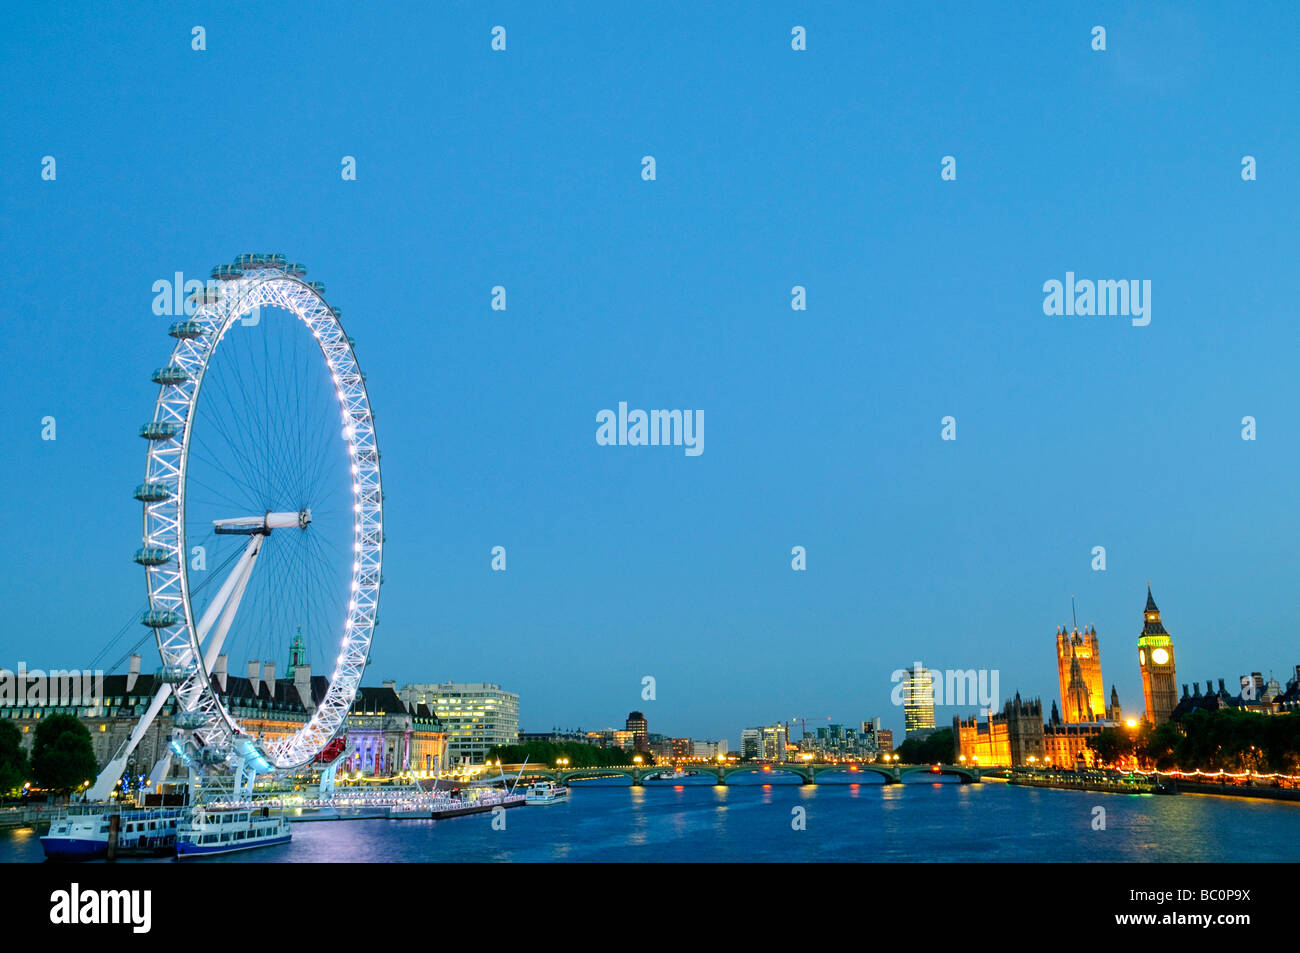 Londra, UK - London Eye (sinistra) torri sopra il Tamigi all'imbrunire, con il Palazzo di Westminster (Casa del Parlamento e dal Big Ben) a destra. Alta risoluzione panorama. Foto Stock